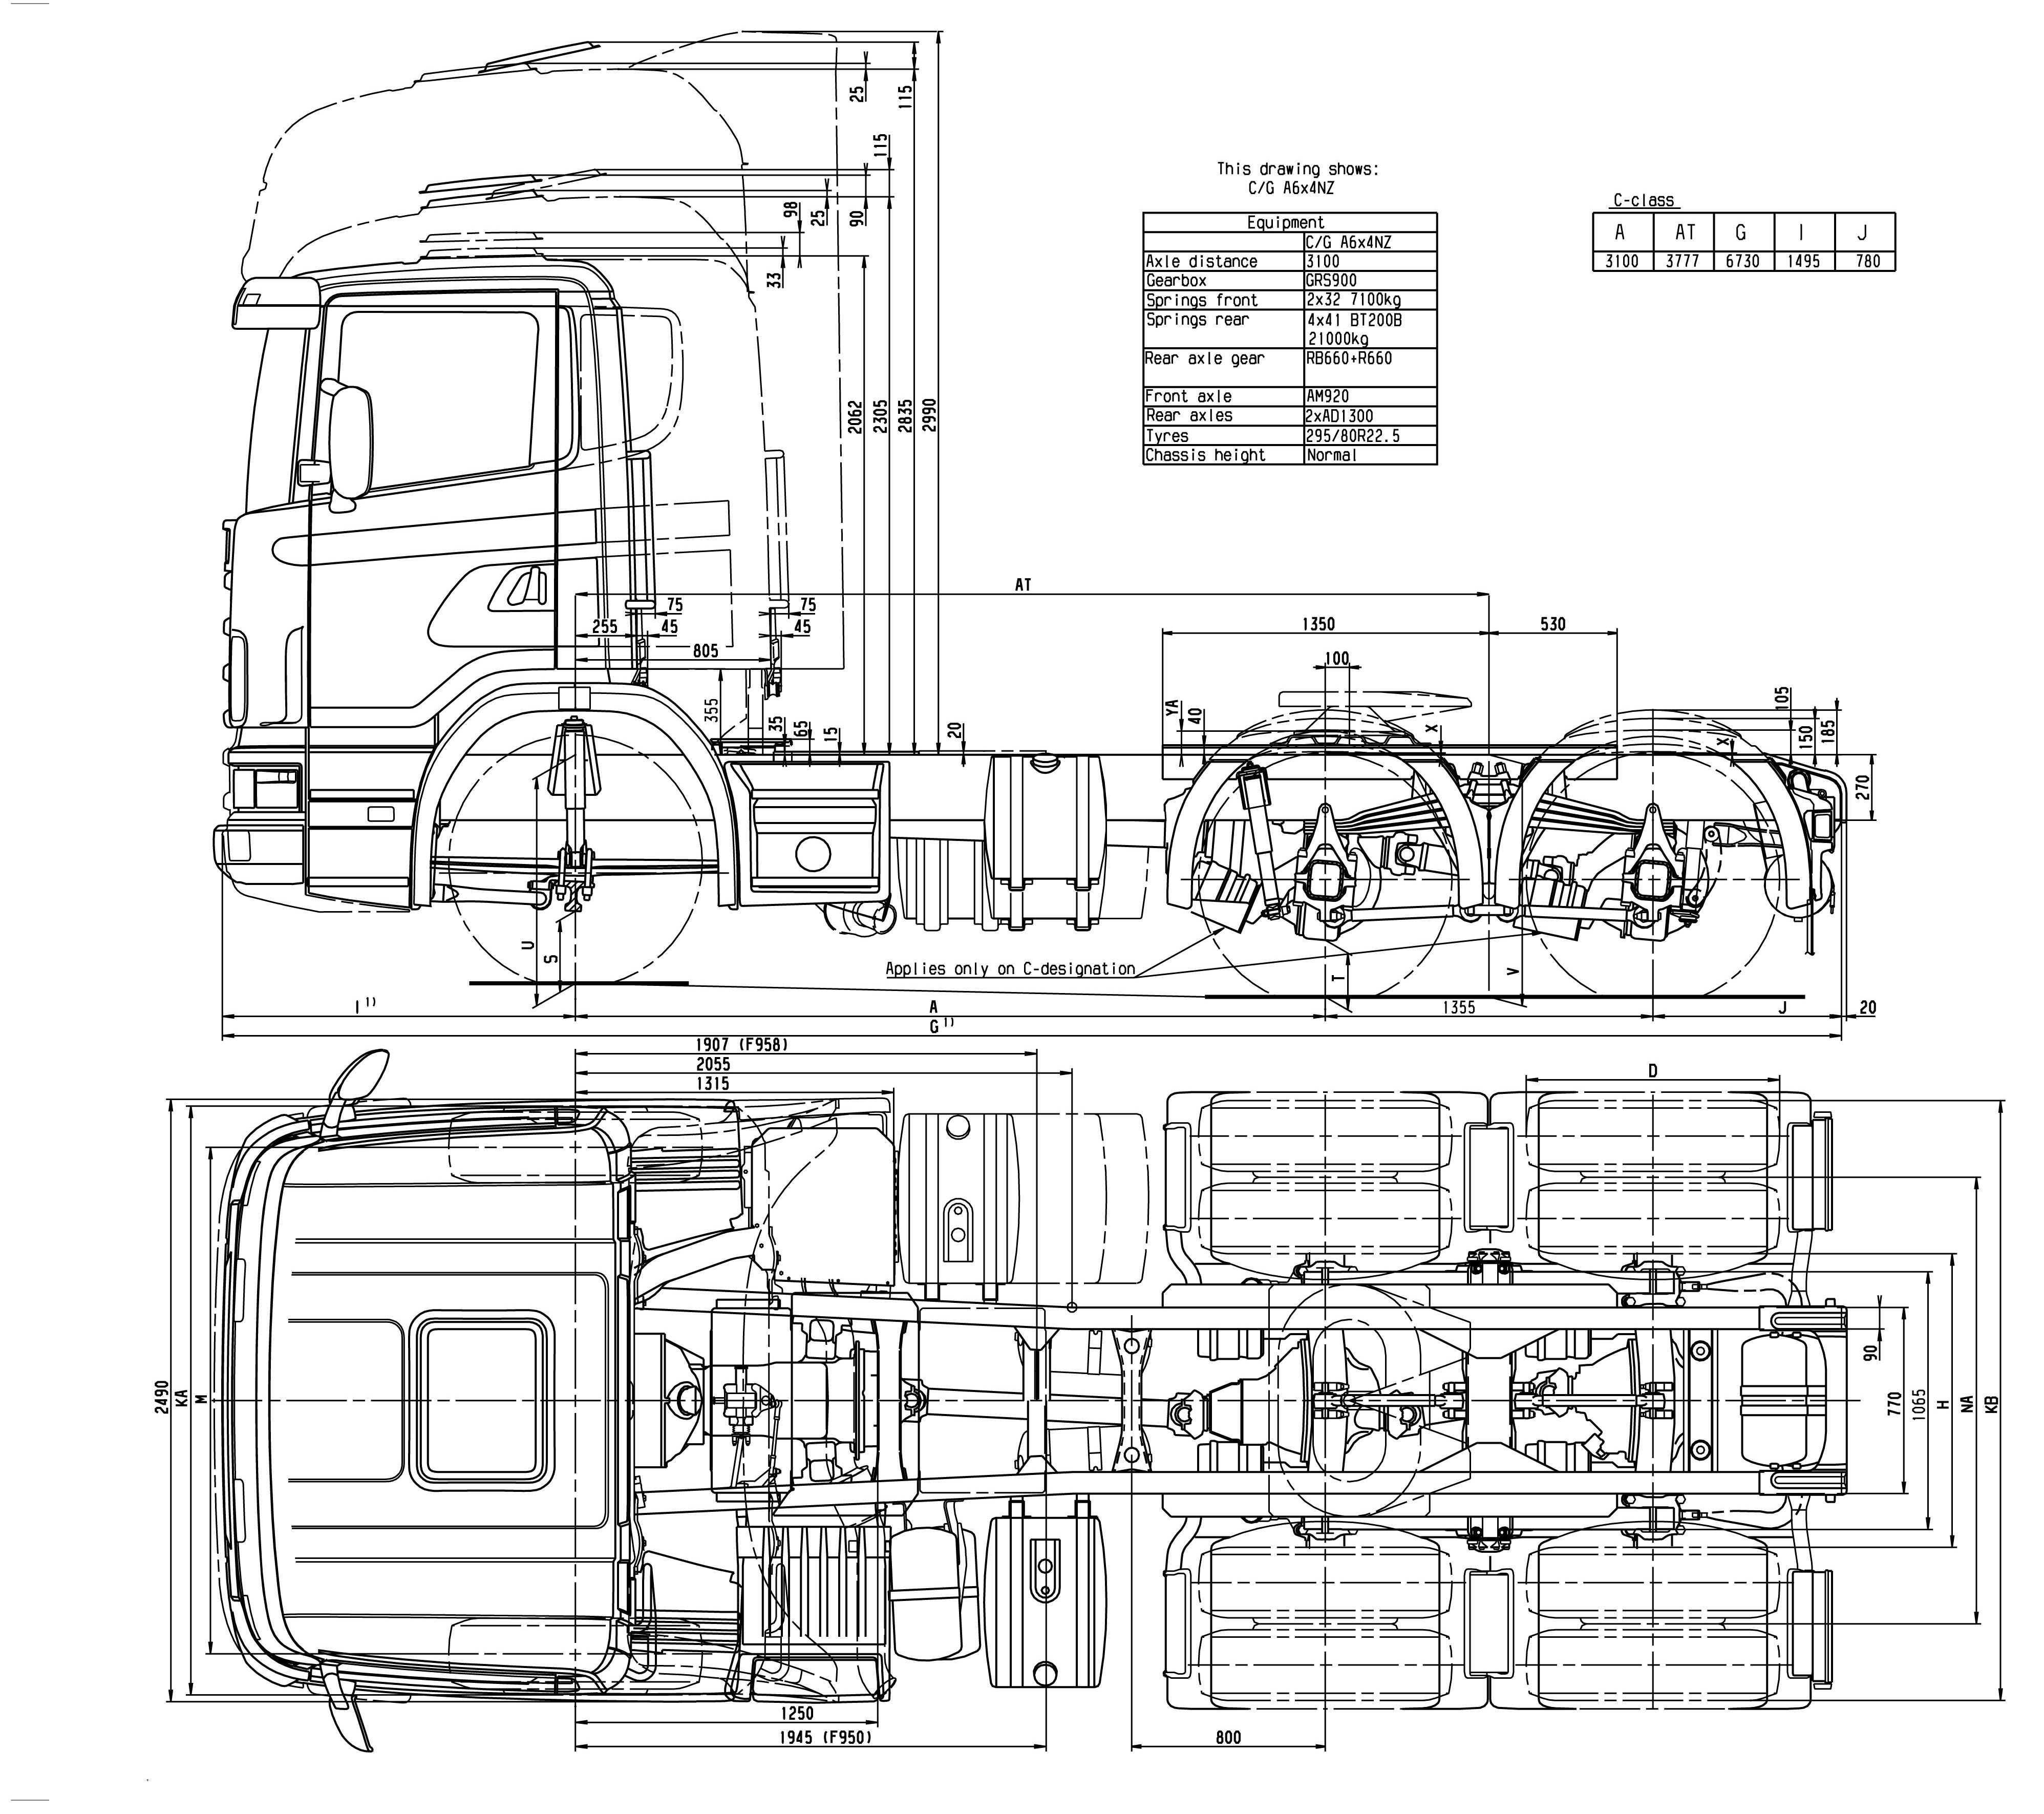 Scania p400: технические характеристики, расход топлива